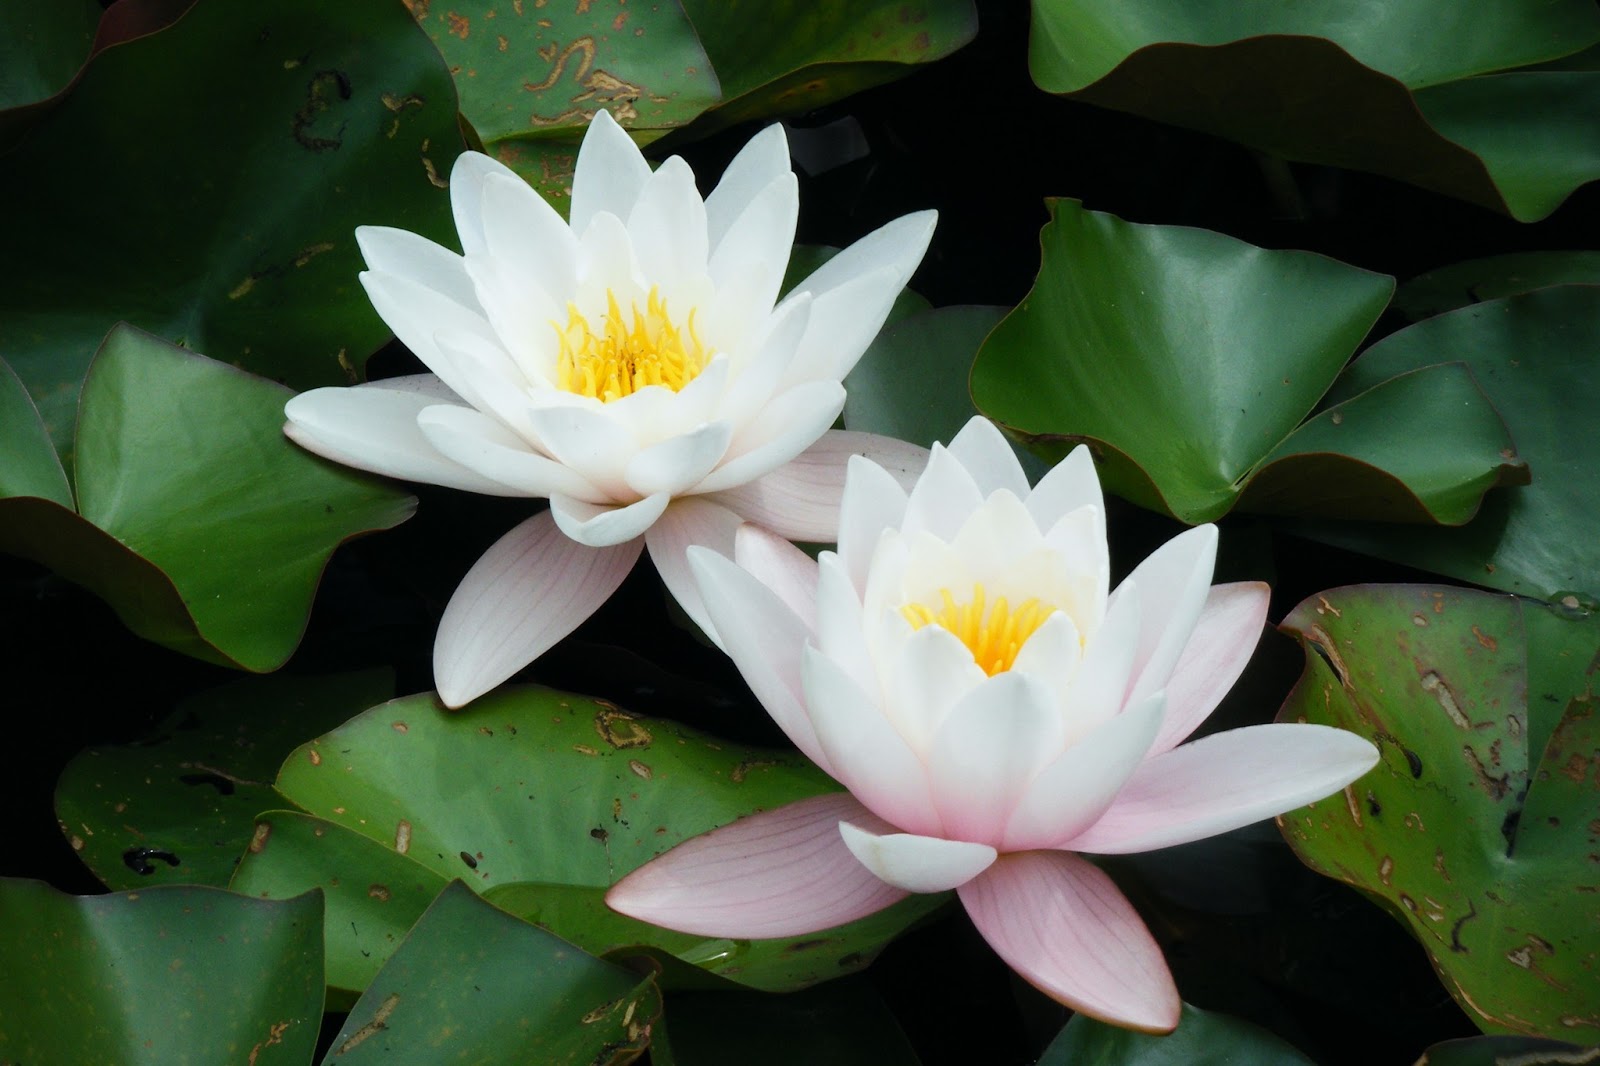 papel de loto,flor,lirio de agua blanca fragante,loto sagrado,loto,planta acuática